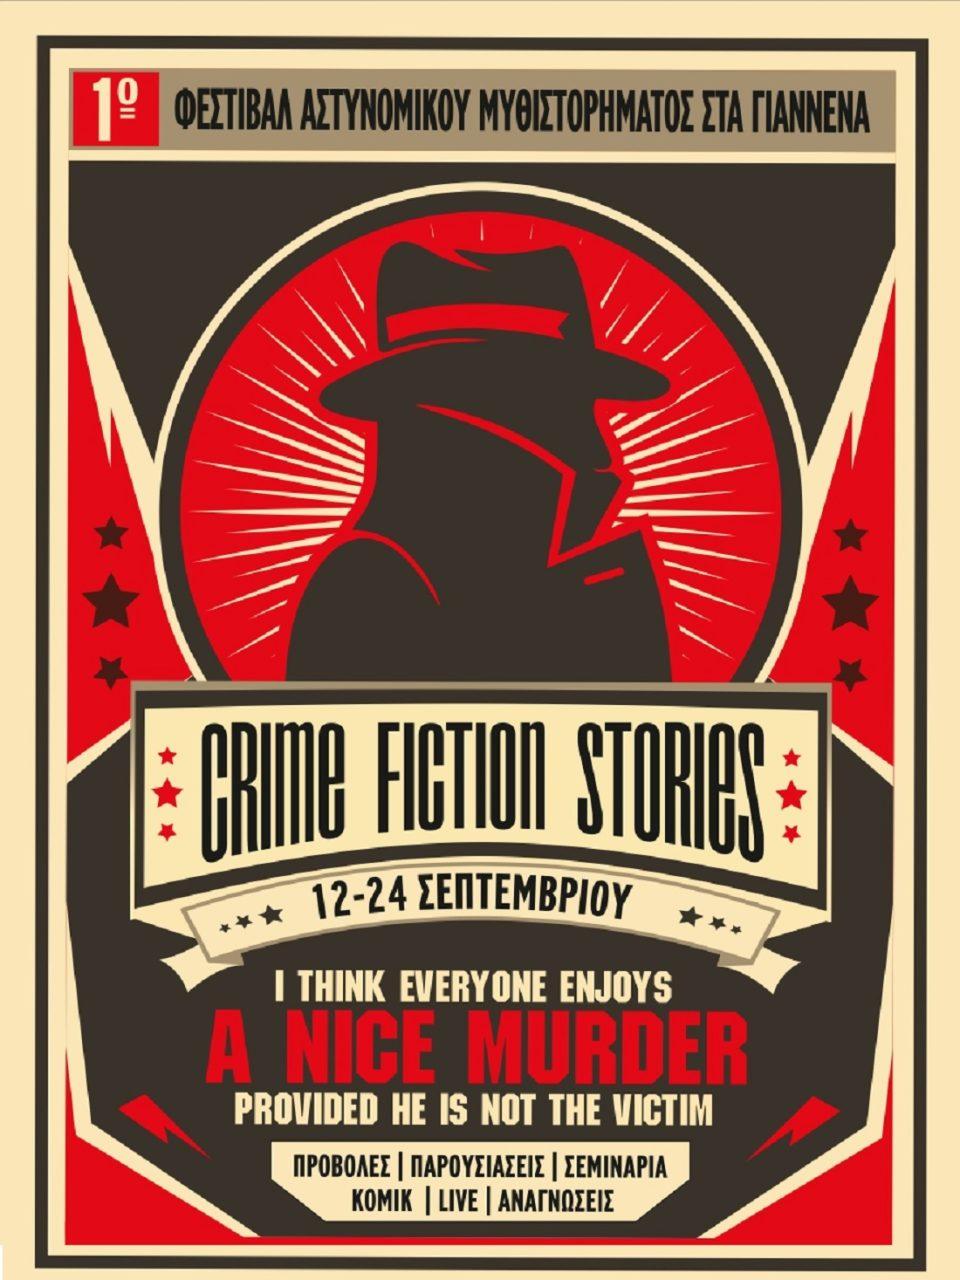 Υπό την αιγίδα της ΕΛΣΑΛ το φεστιβάλ «Crime Fiction Stories» στα Ιωάννινα 